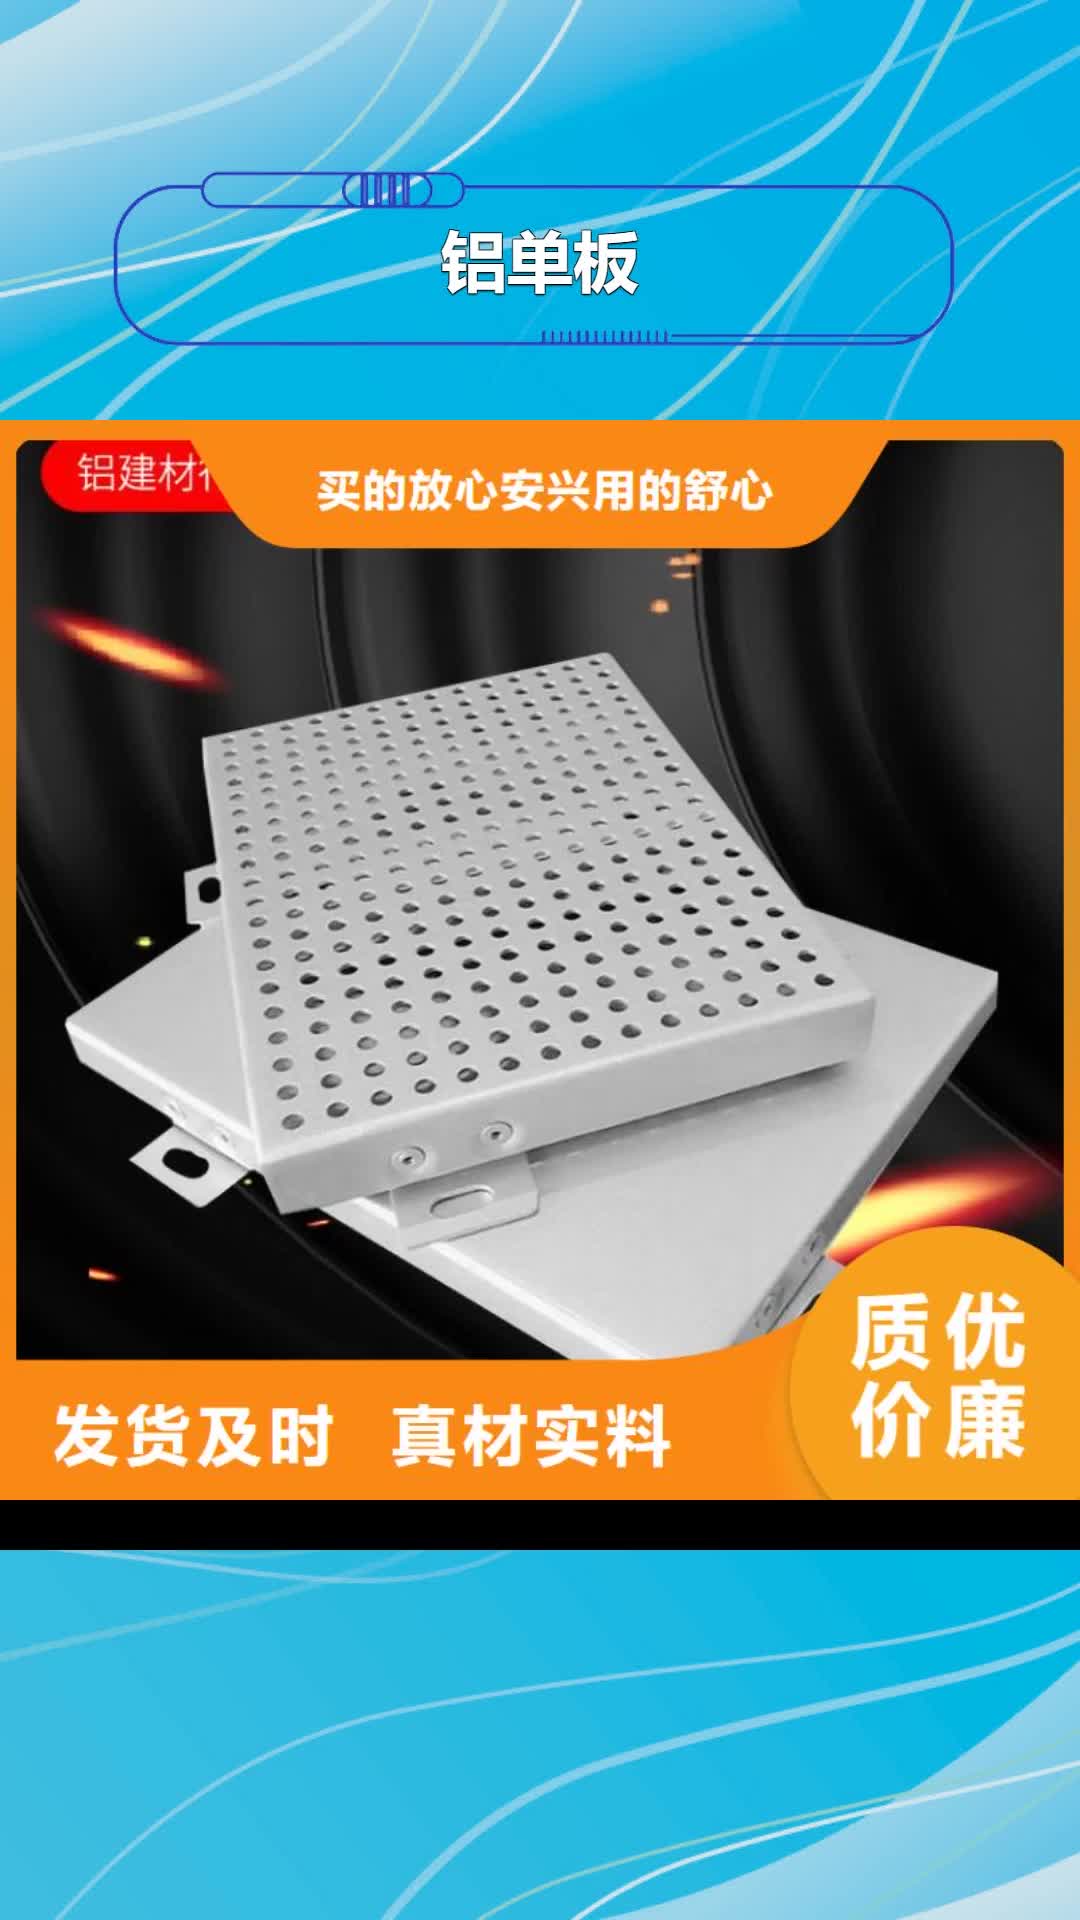 台湾 铝单板 【铝单板造形】拒绝伪劣产品